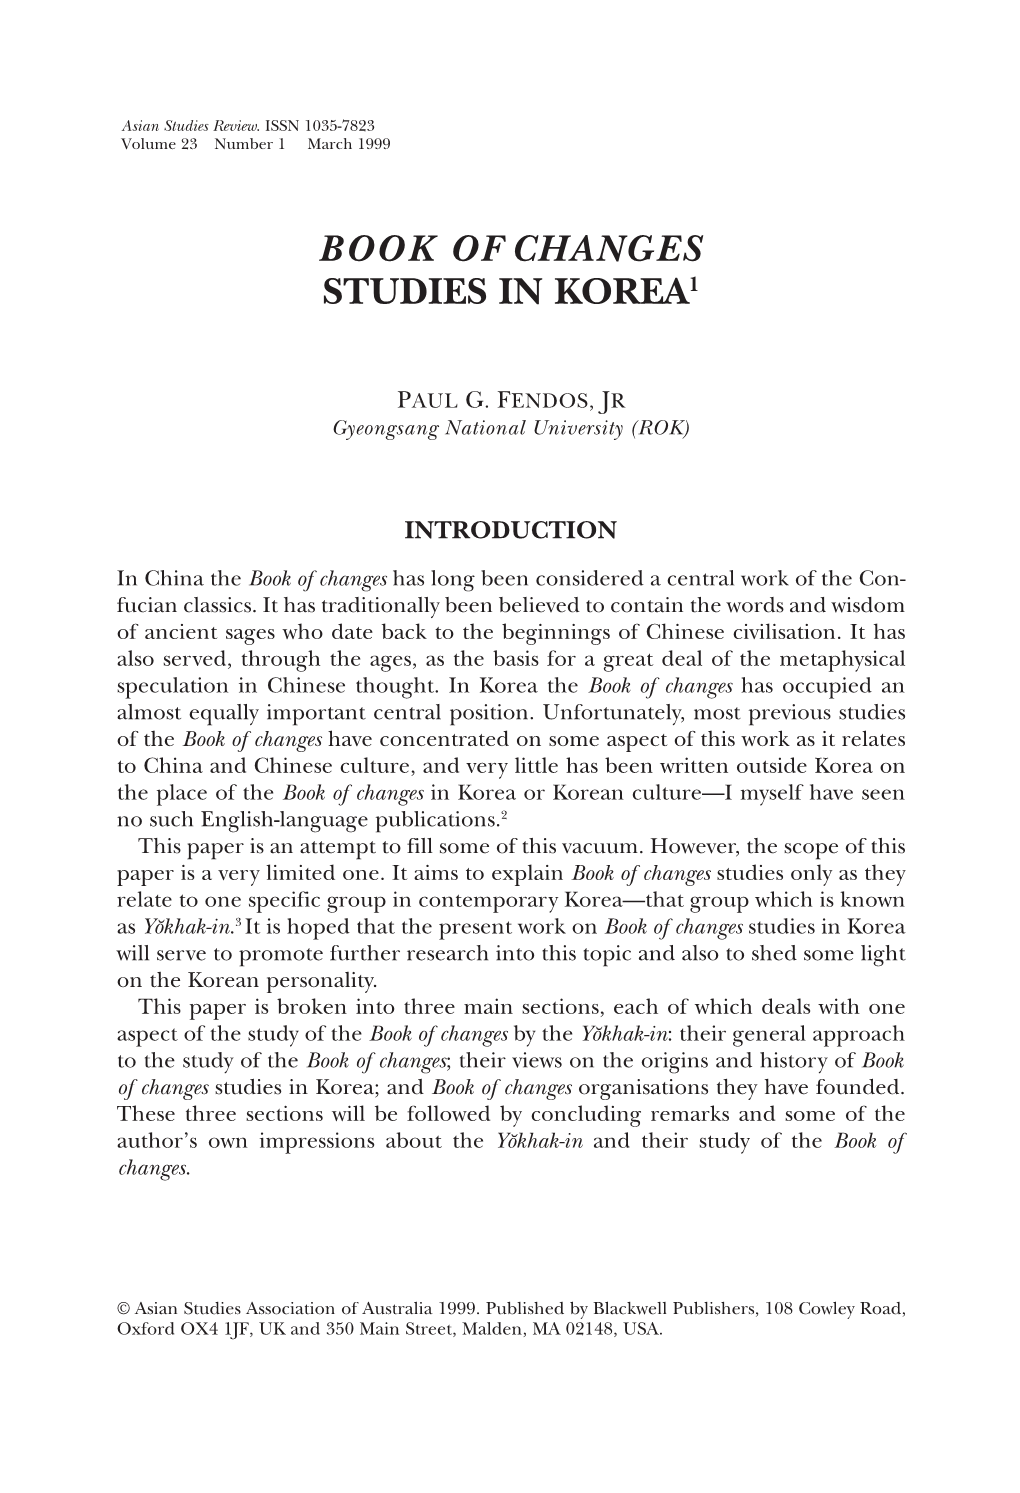 Book of Changes Studies in Korea1